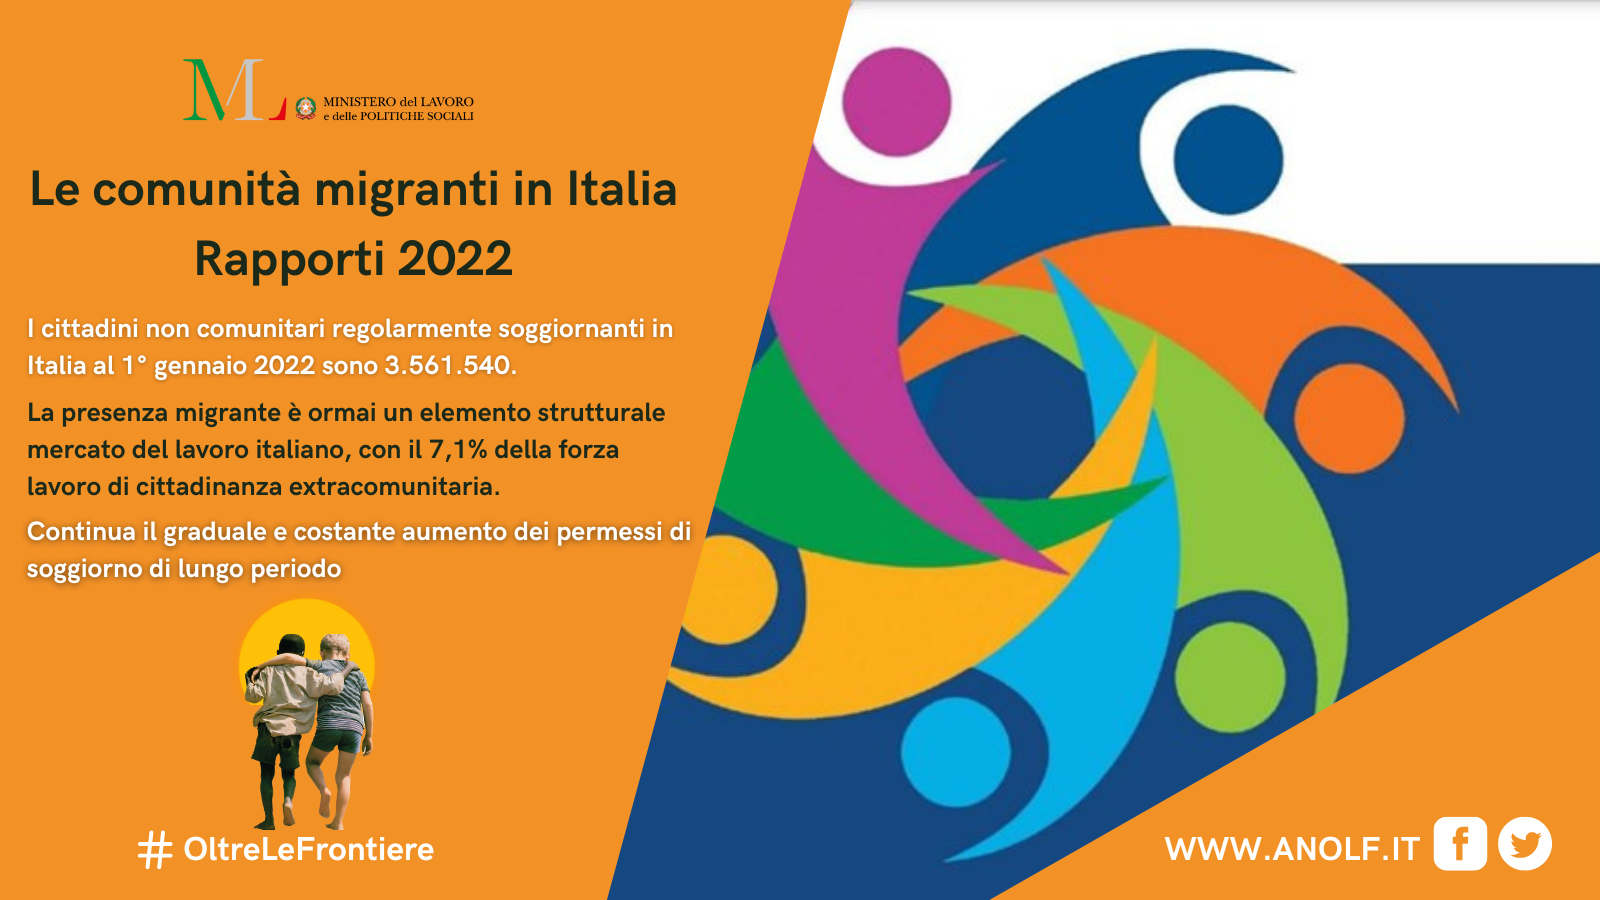 “Le comunità migranti in Italia”: Rapporti 2022